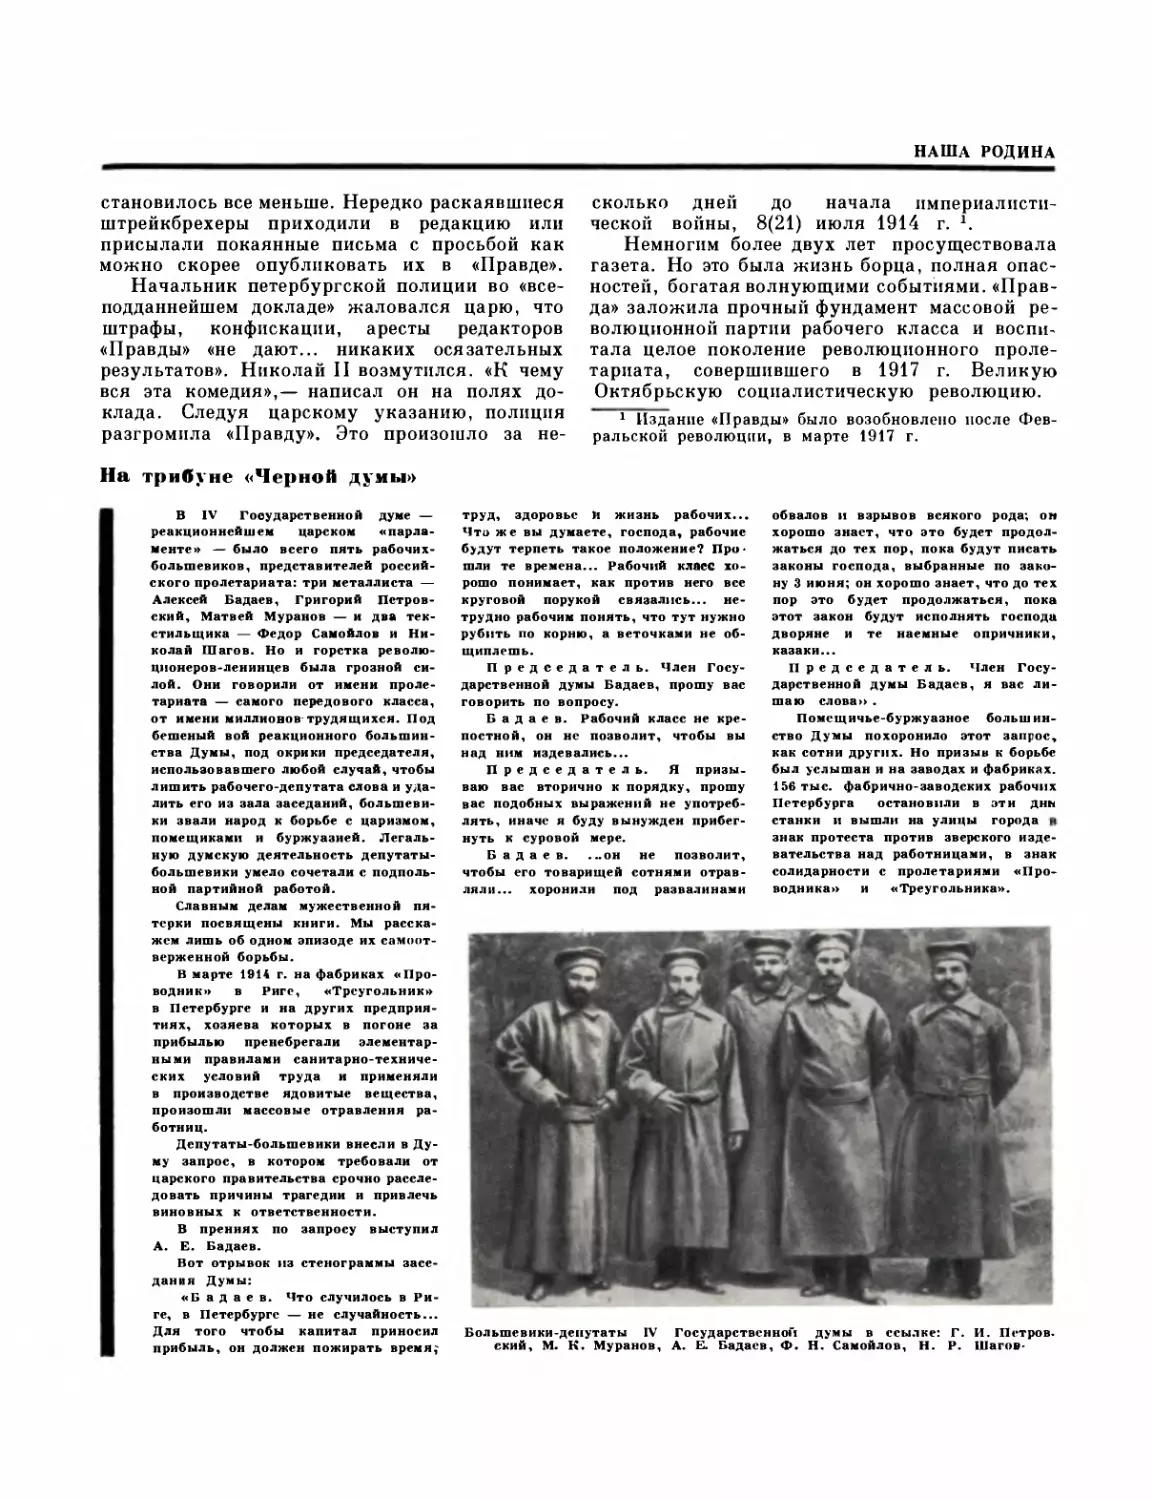 Первая мировая война и свержение царизма в России